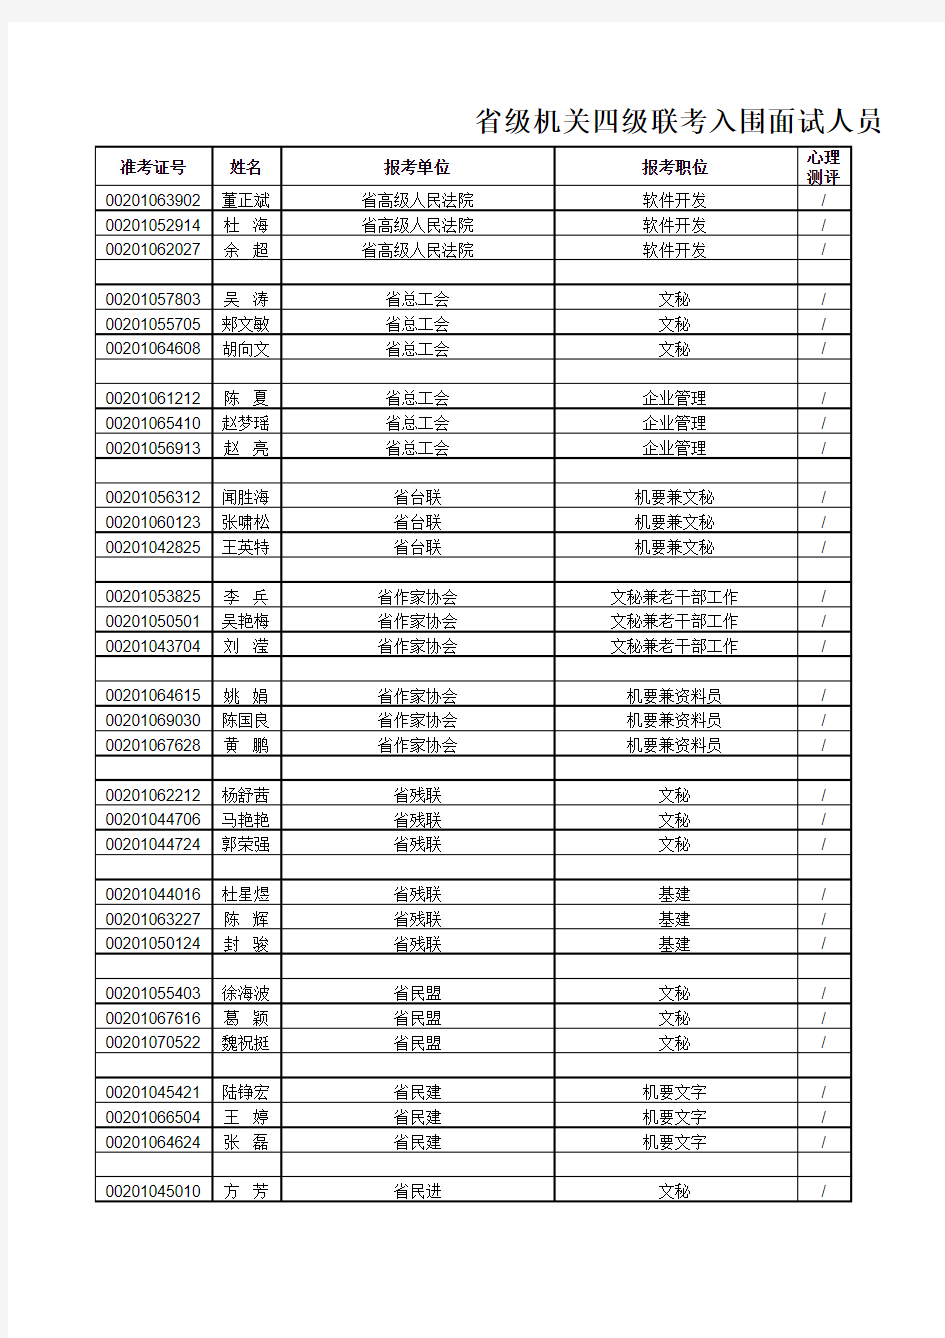 2010年浙江级单位入围人员成绩